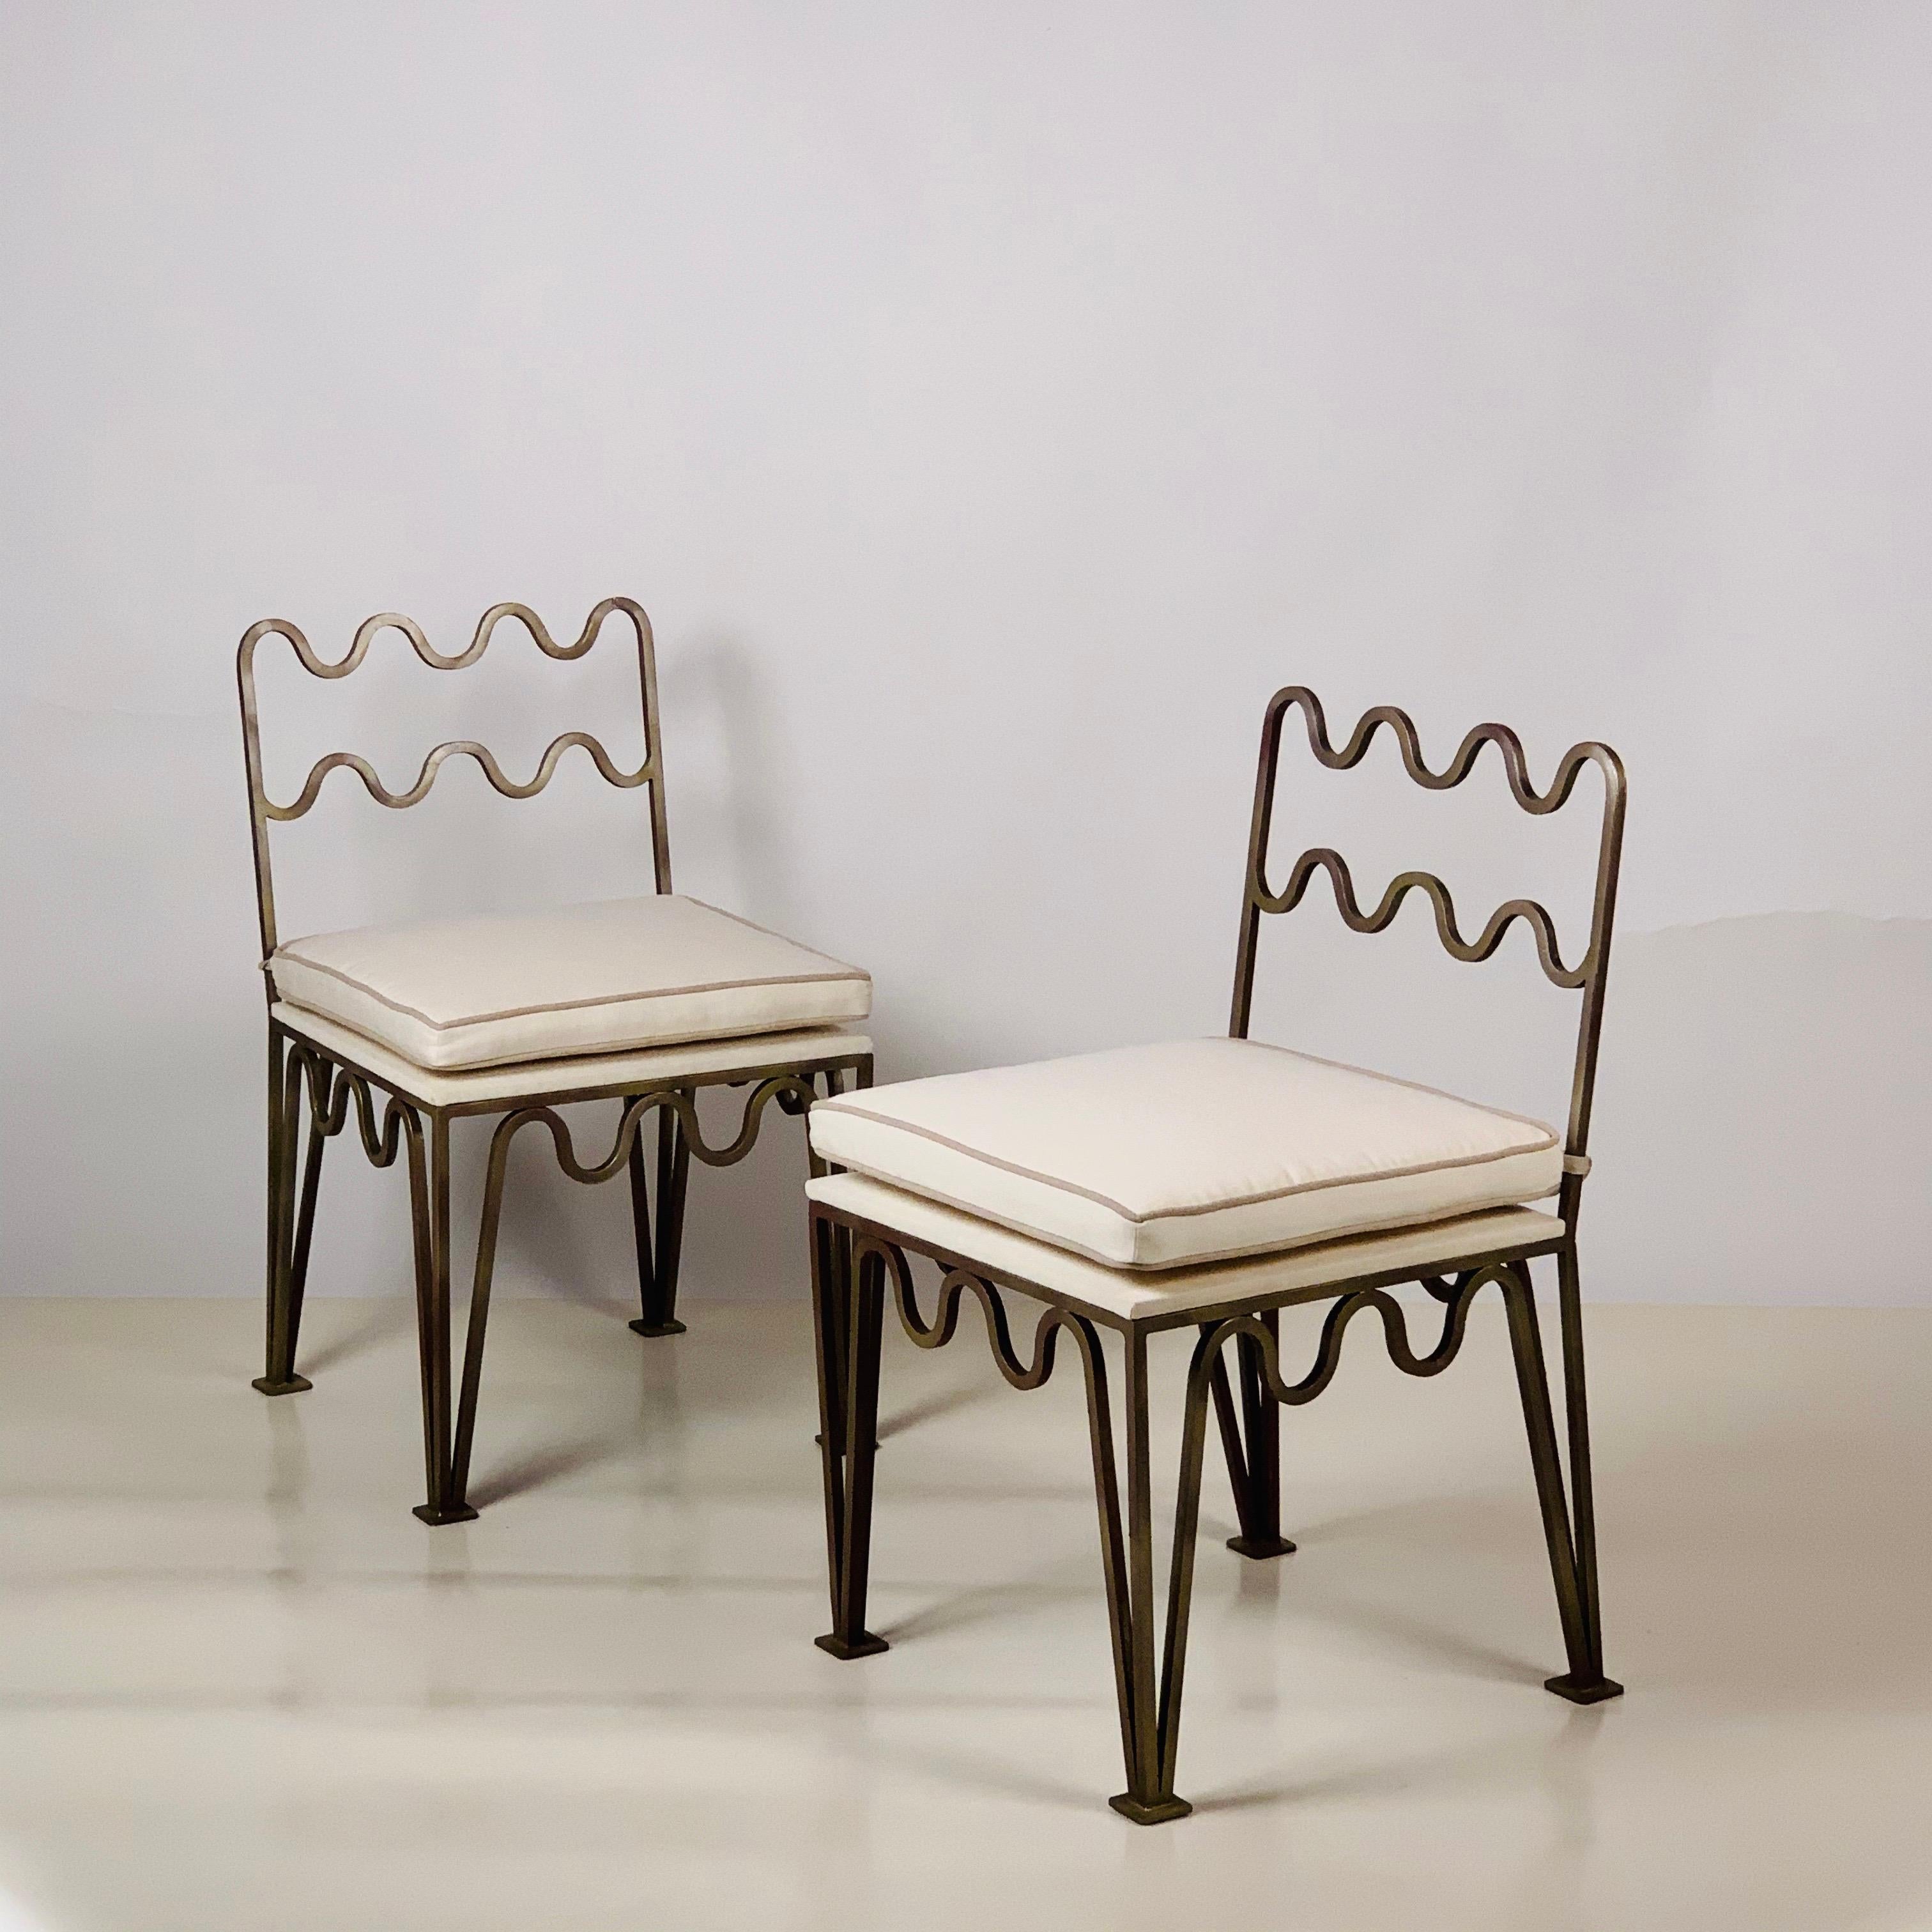 Ein Paar schicke, geschwungene Beistellstühle 'Méandre' von Design Frères.

Rahmen aus bronziertem Stahl. Gepolsterte Kissen aus natürlichem Leinen.

Diese Méandre™-Stühle aus unserer exklusiven Design Frères®-Linie werden in unserem Atelier in Los